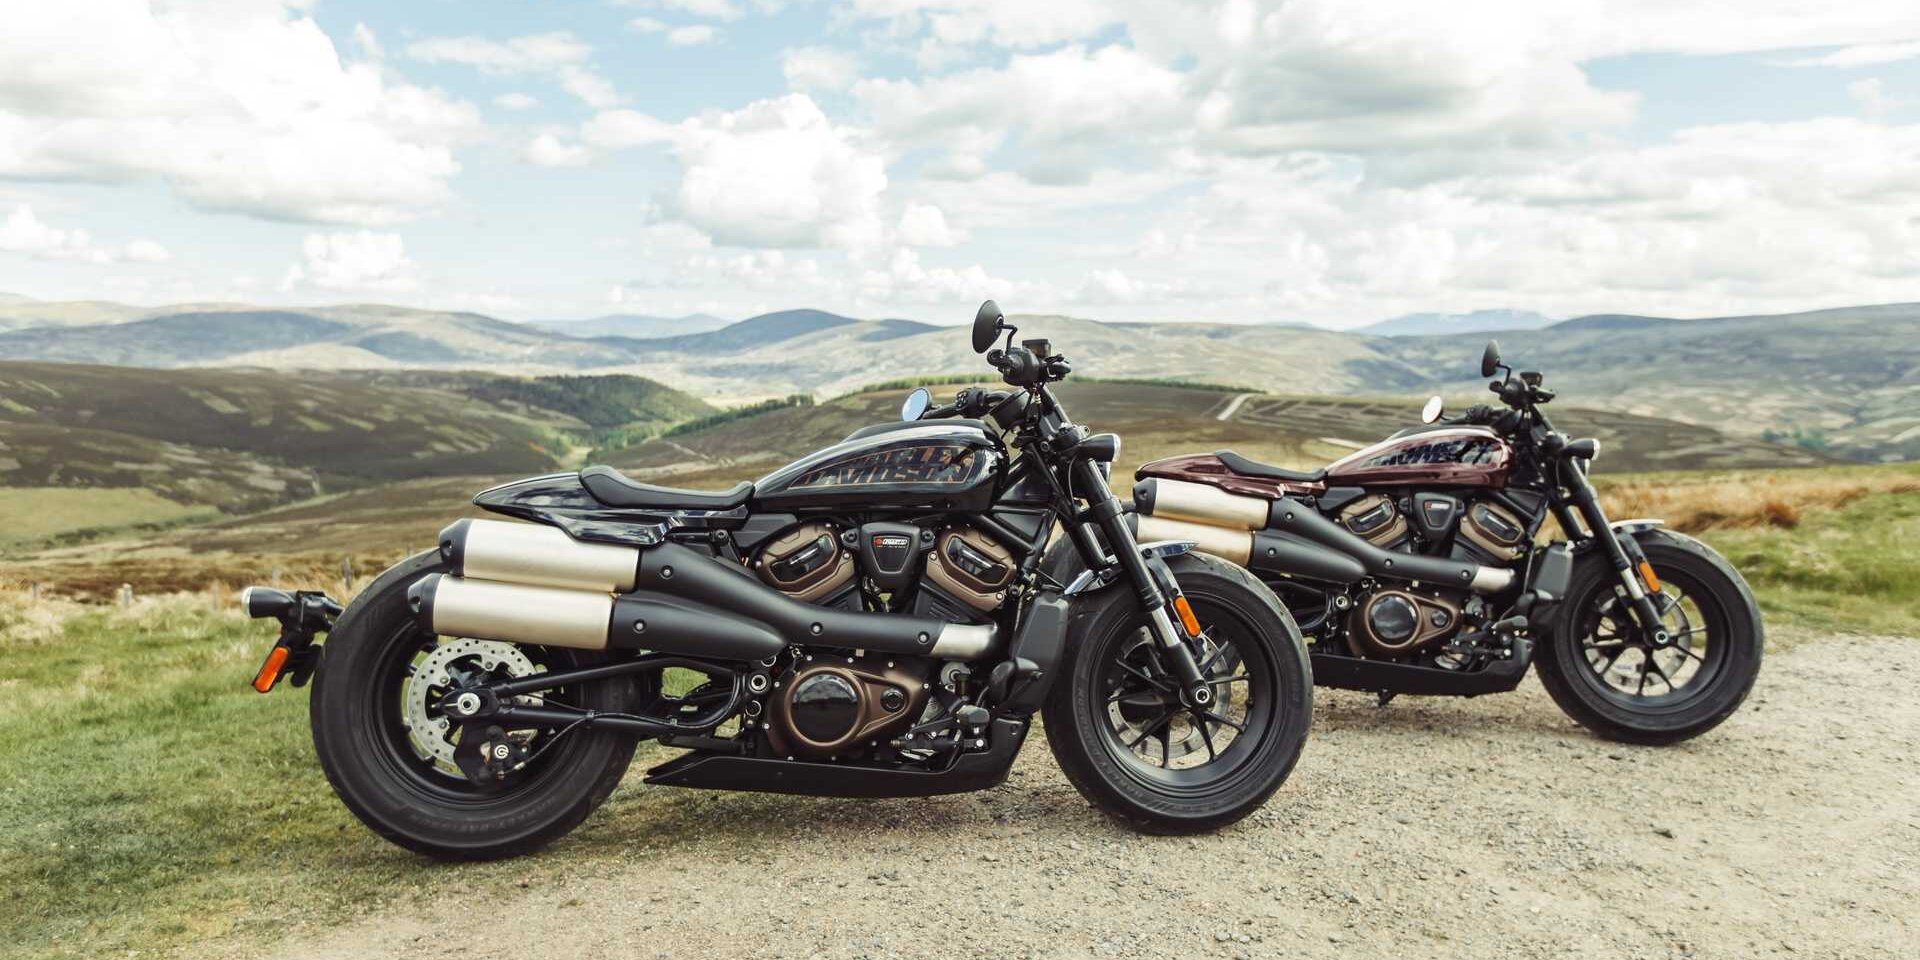 Harley Davidson Zeigt Neue Sportster S Mit Revolutionarem Motor